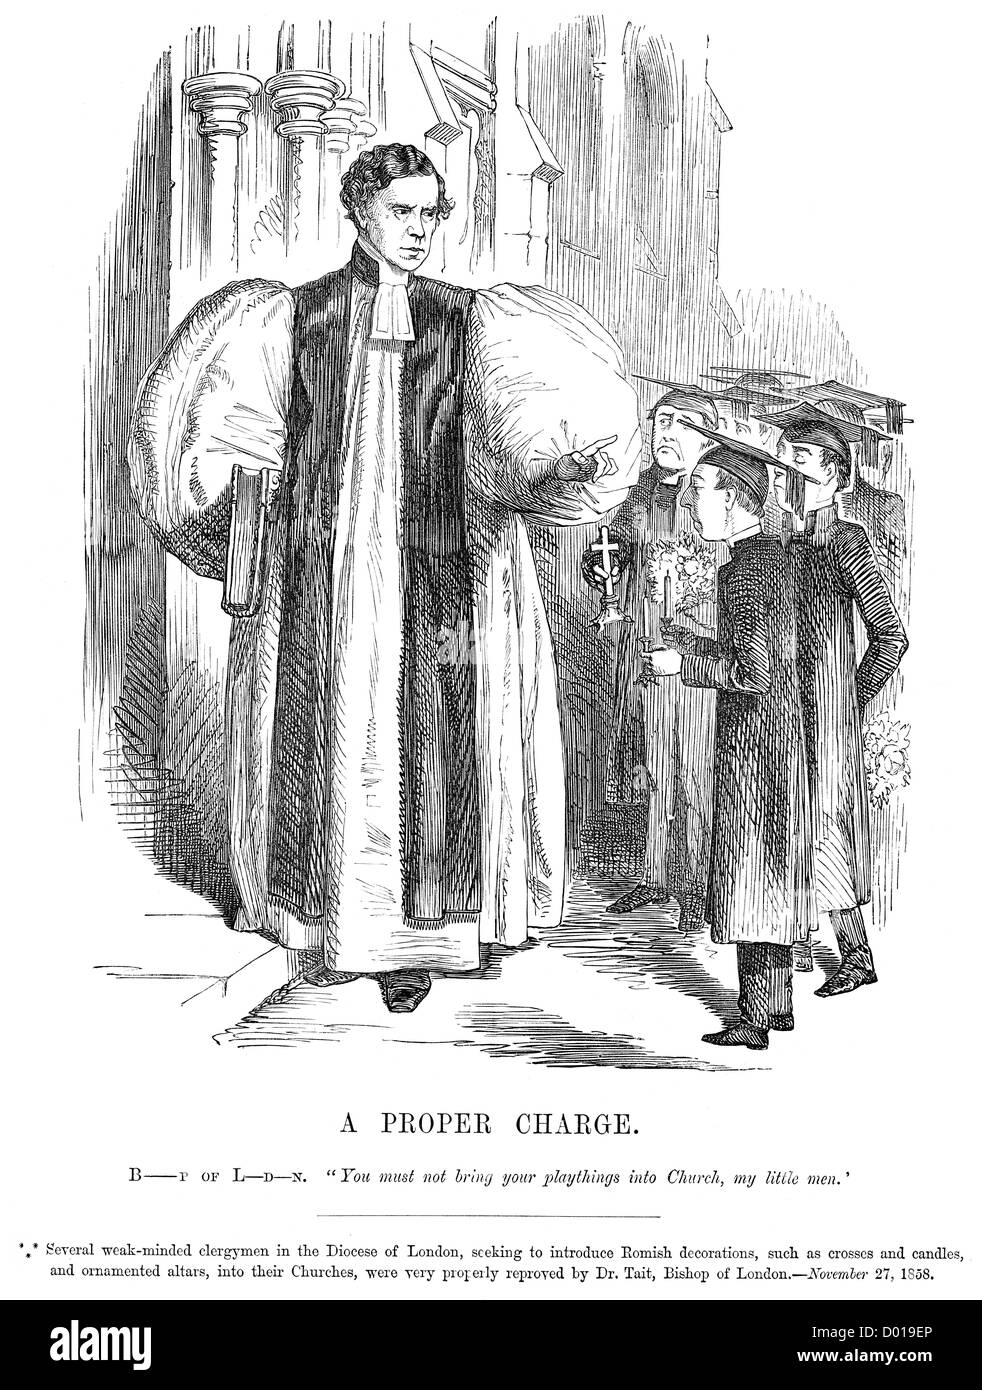 Una corretta carica. La caricatura del vescovo di Londra impedendo la introduzione di Romish decorazioni nelle chiese di Londra Foto Stock